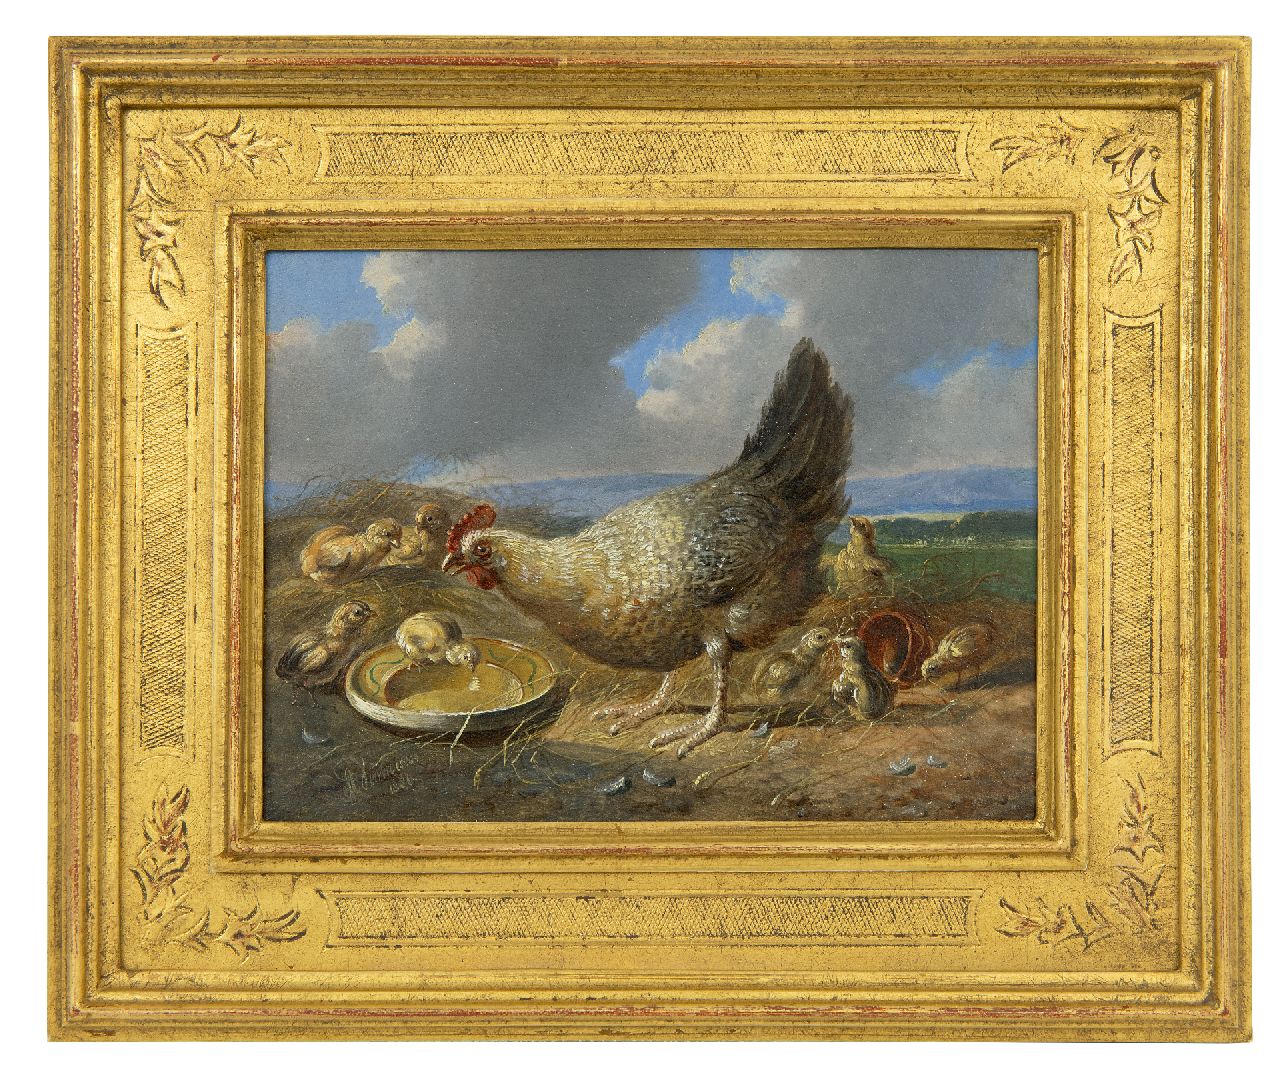 Verhoesen A.  | Albertus Verhoesen | Schilderijen te koop aangeboden | Hen met kuikens in weids landschap (tezamen met pendant), olieverf op paneel 14,5 x 19,3 cm, gesigneerd linksonder en gedateerd 1880